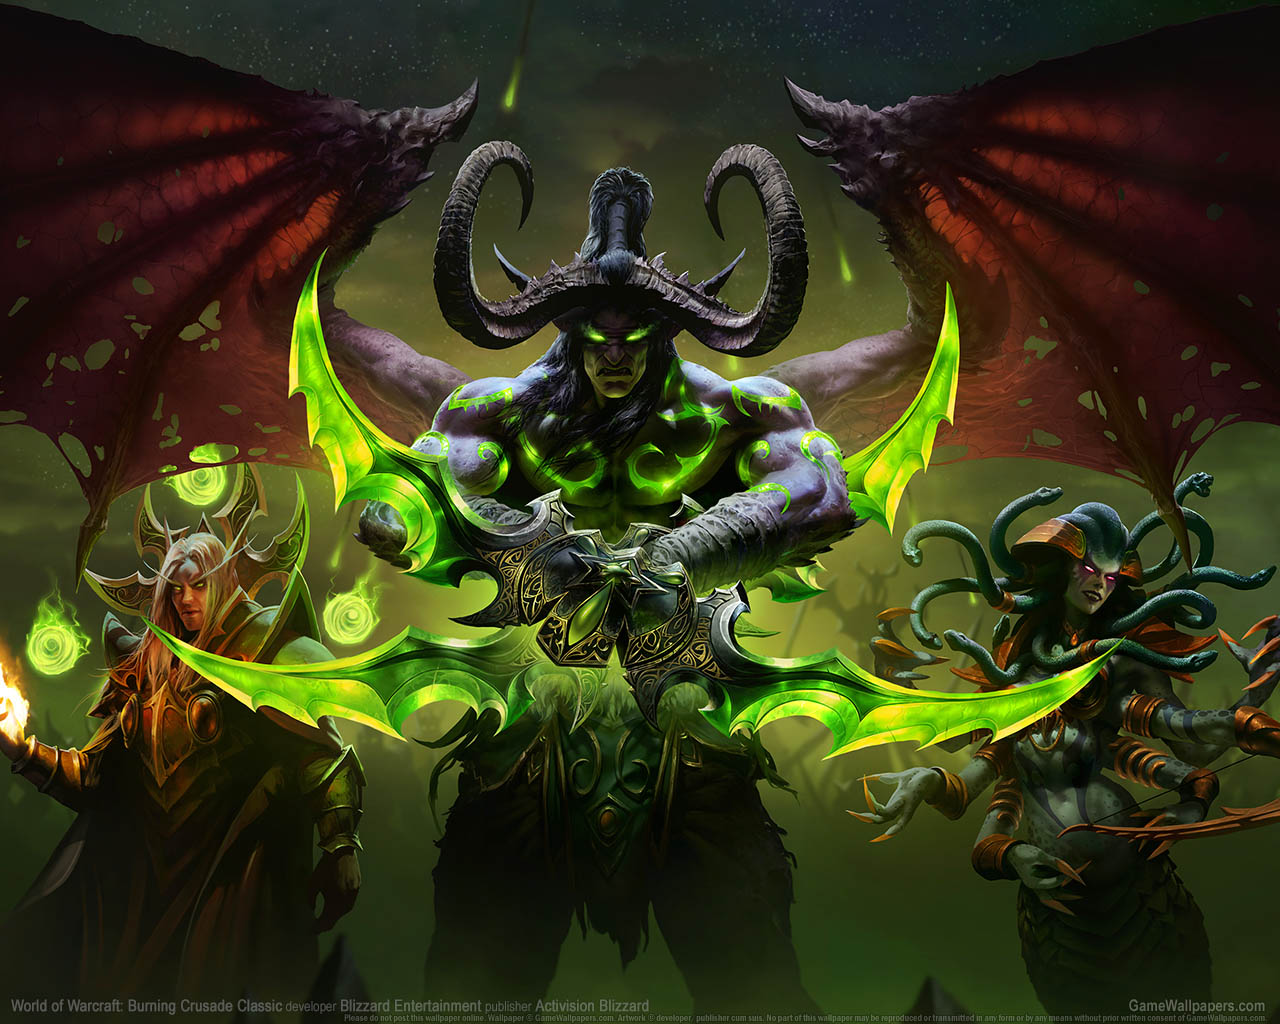 World of Warcraft: Burning Crusade Classic fond d'cran 01 1280x1024